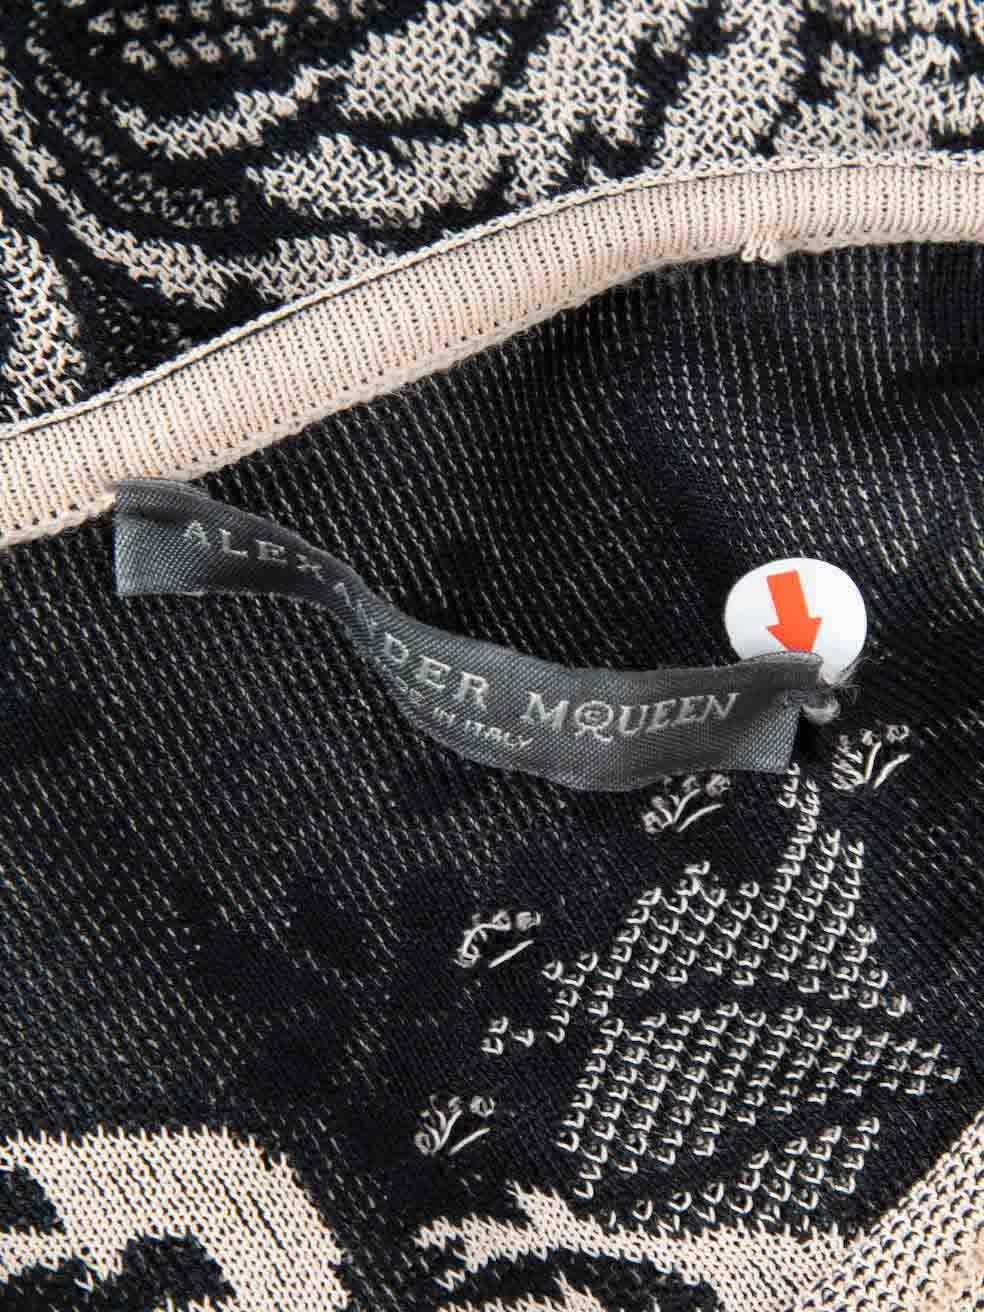 Women's Alexander McQueen Beige Knit Patterned Dress Size M